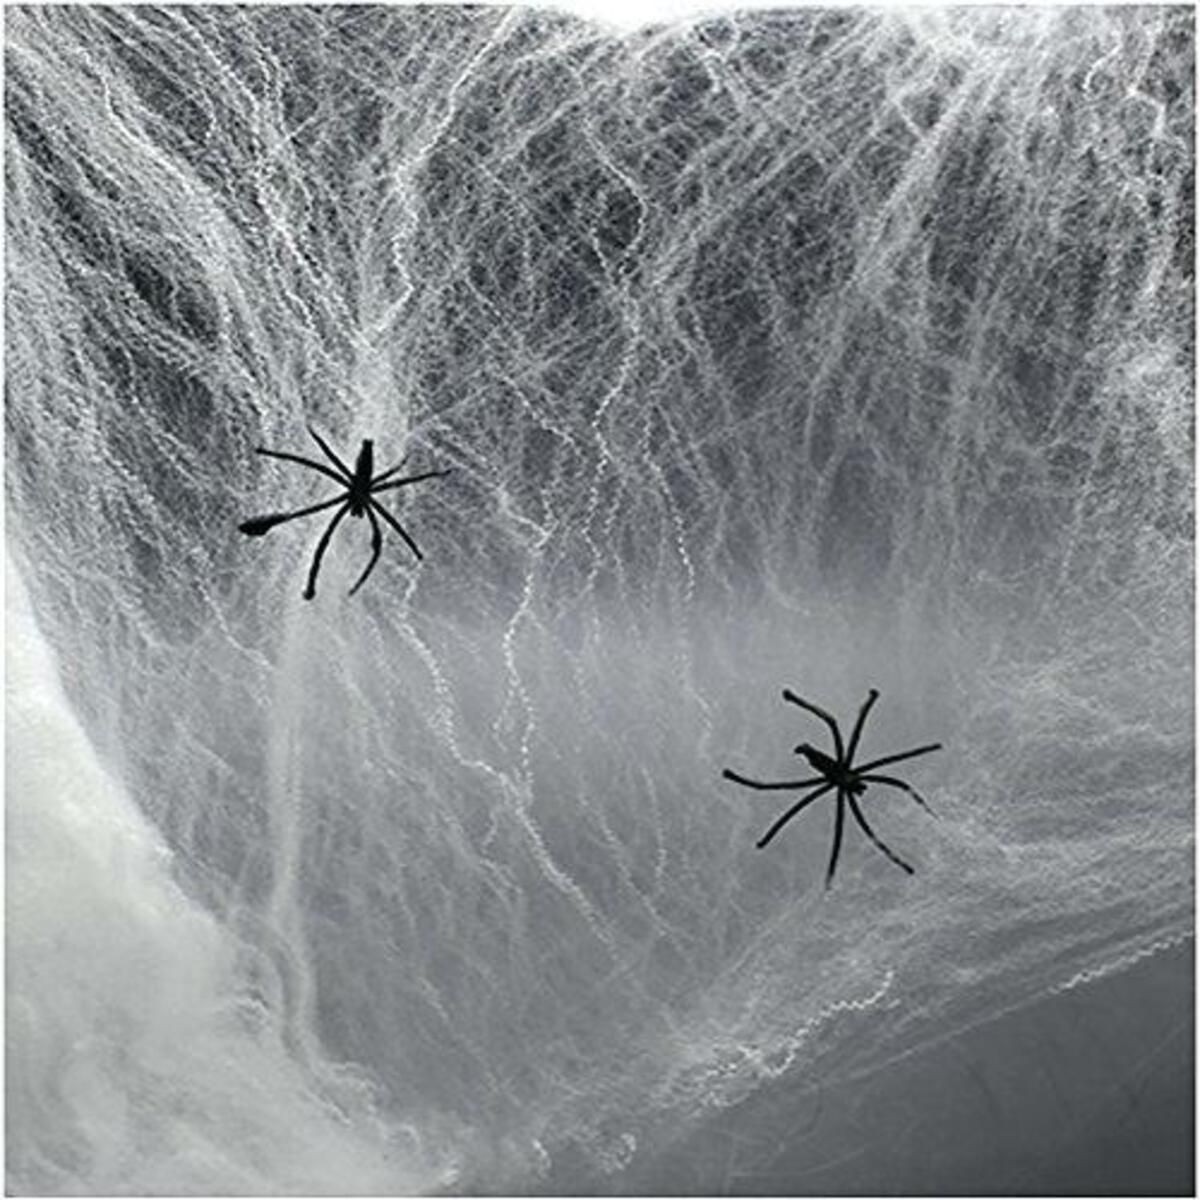 Genel Markalar Beyaz Renk Örümcek Ağ Ve Siyah Örümcekler Seti 60 Gr